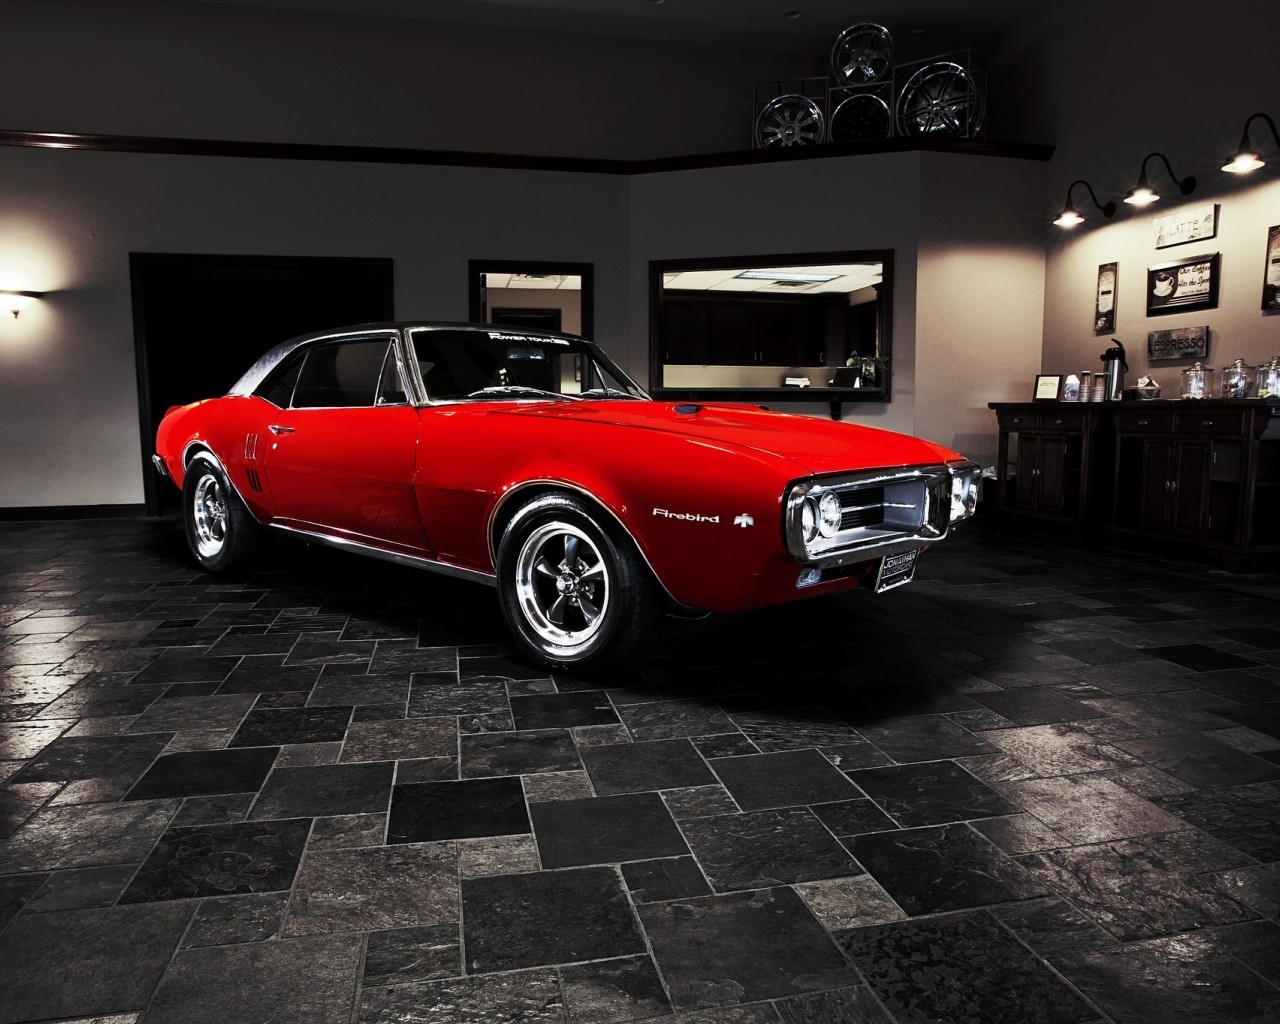 Pontiac Firebird 1967 for 1280 x 1024 resolution